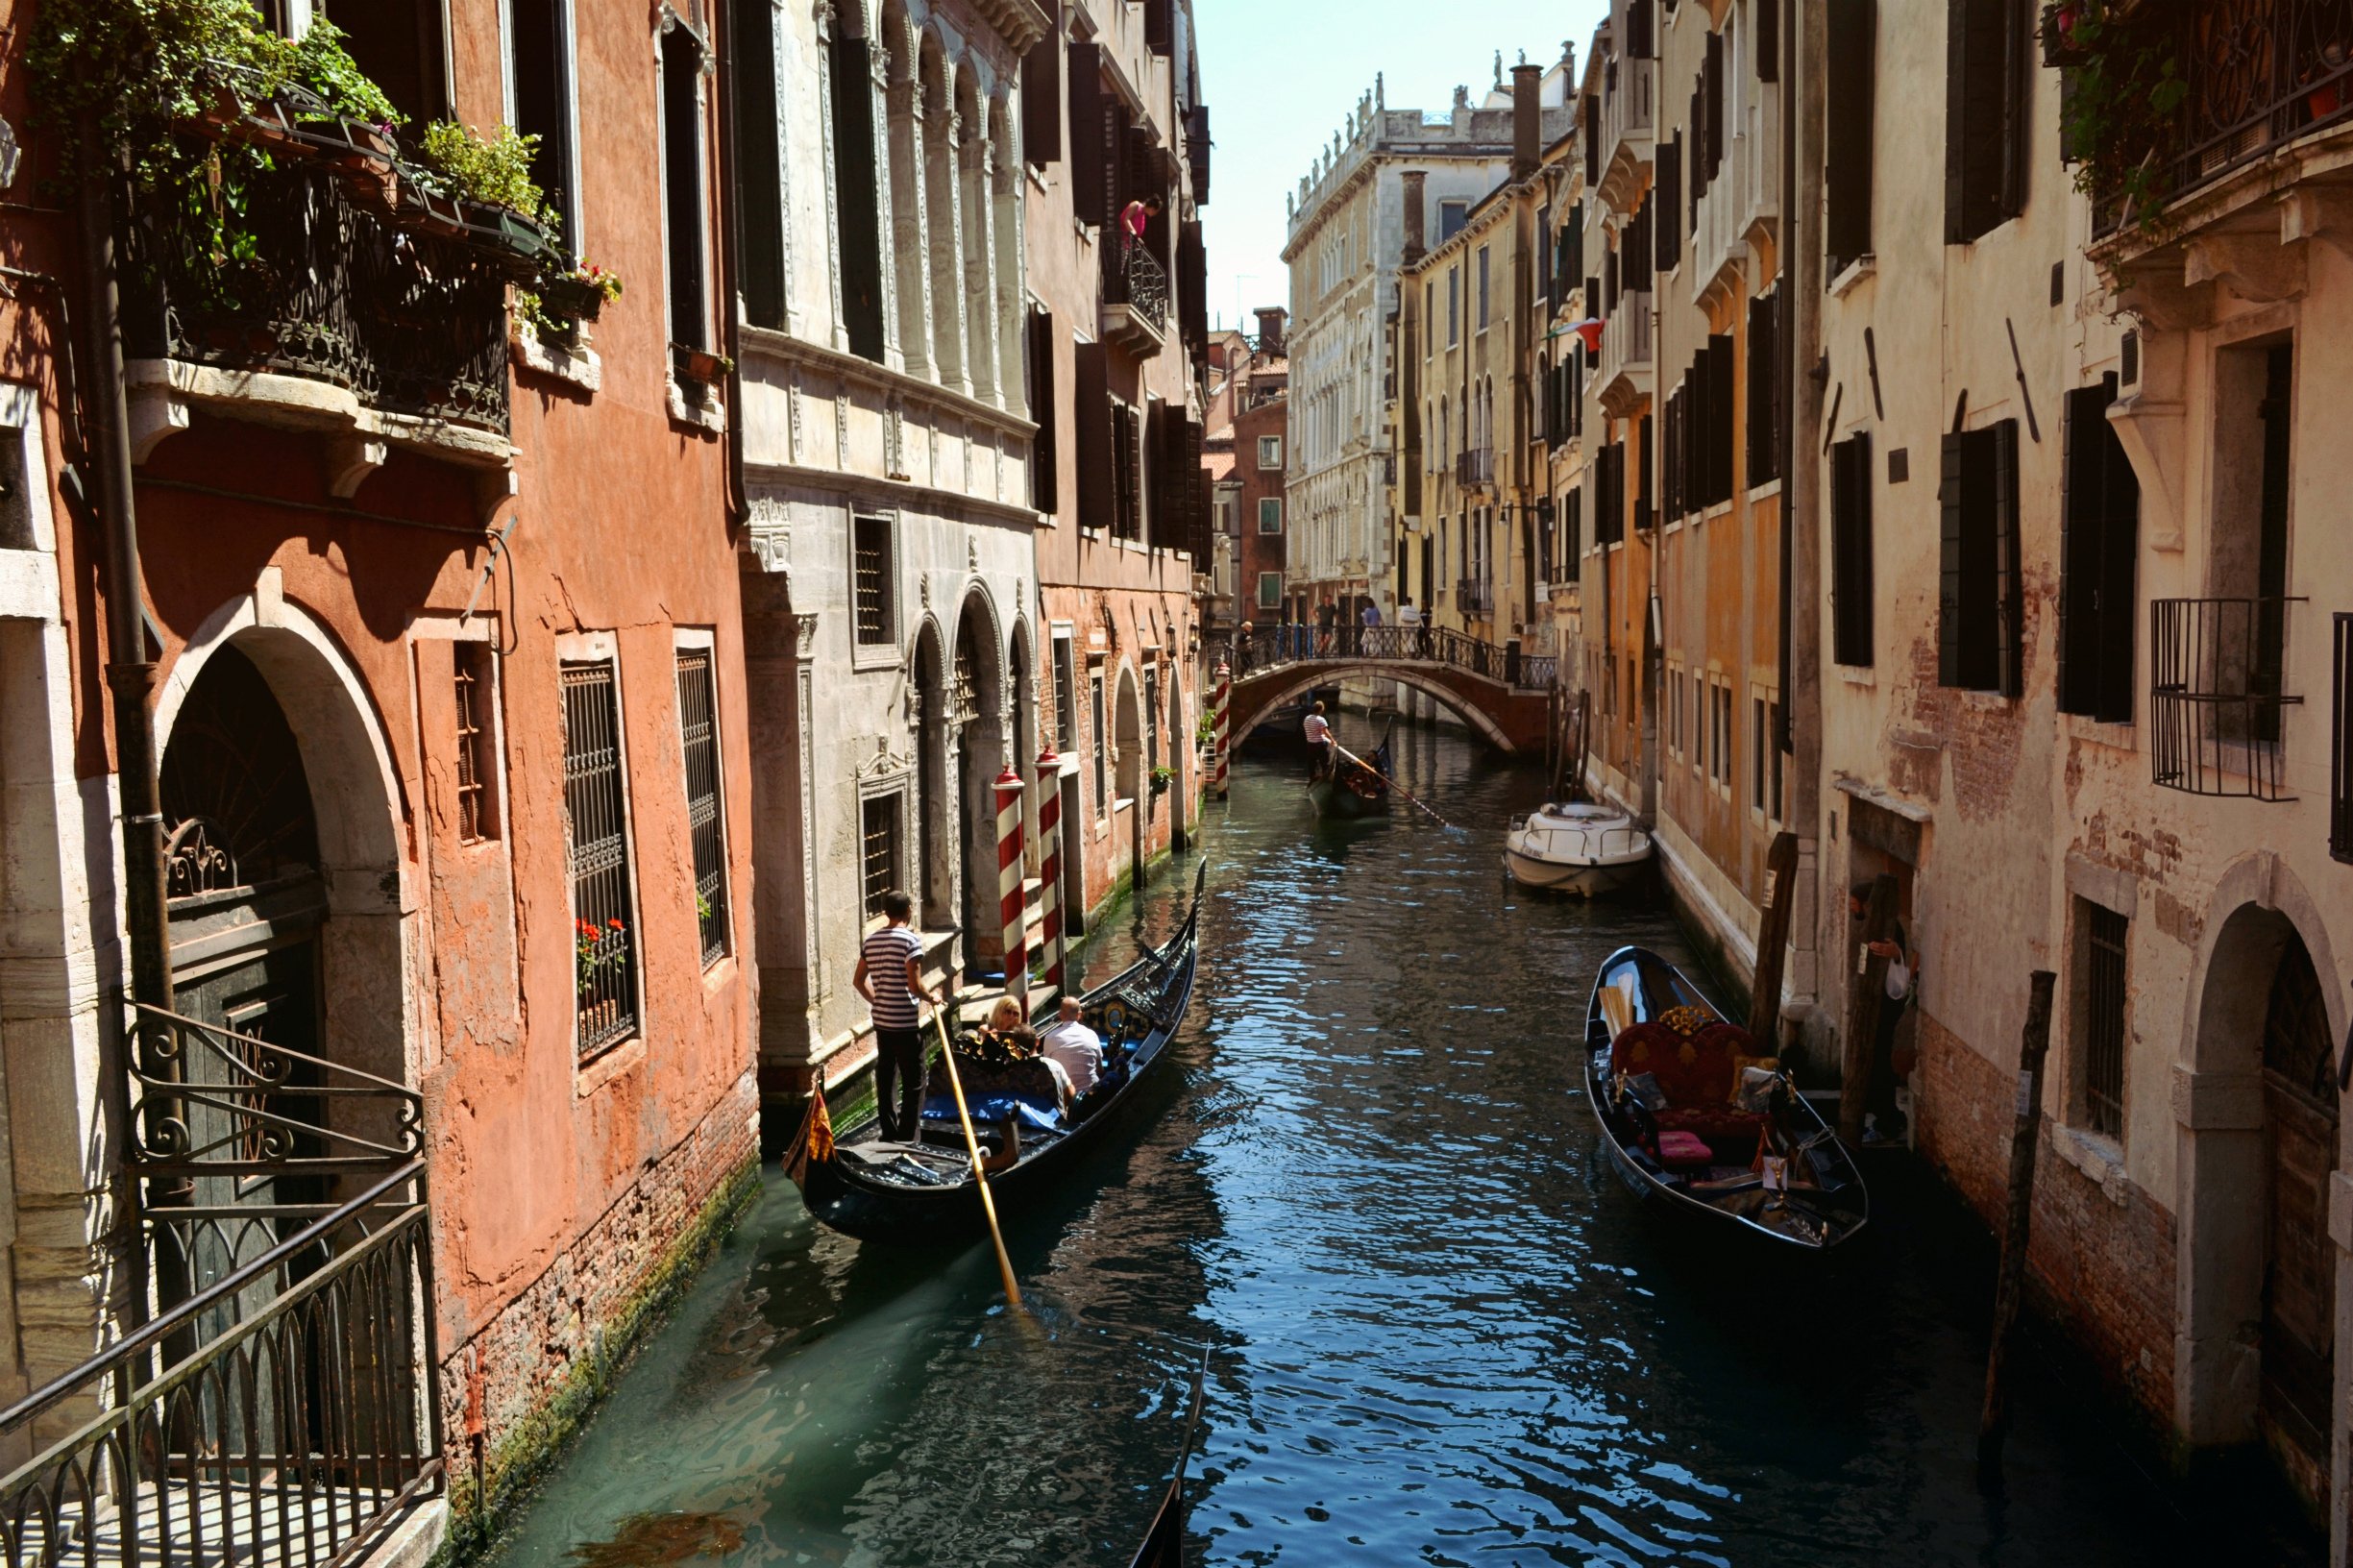 Гондола улочки Венеции